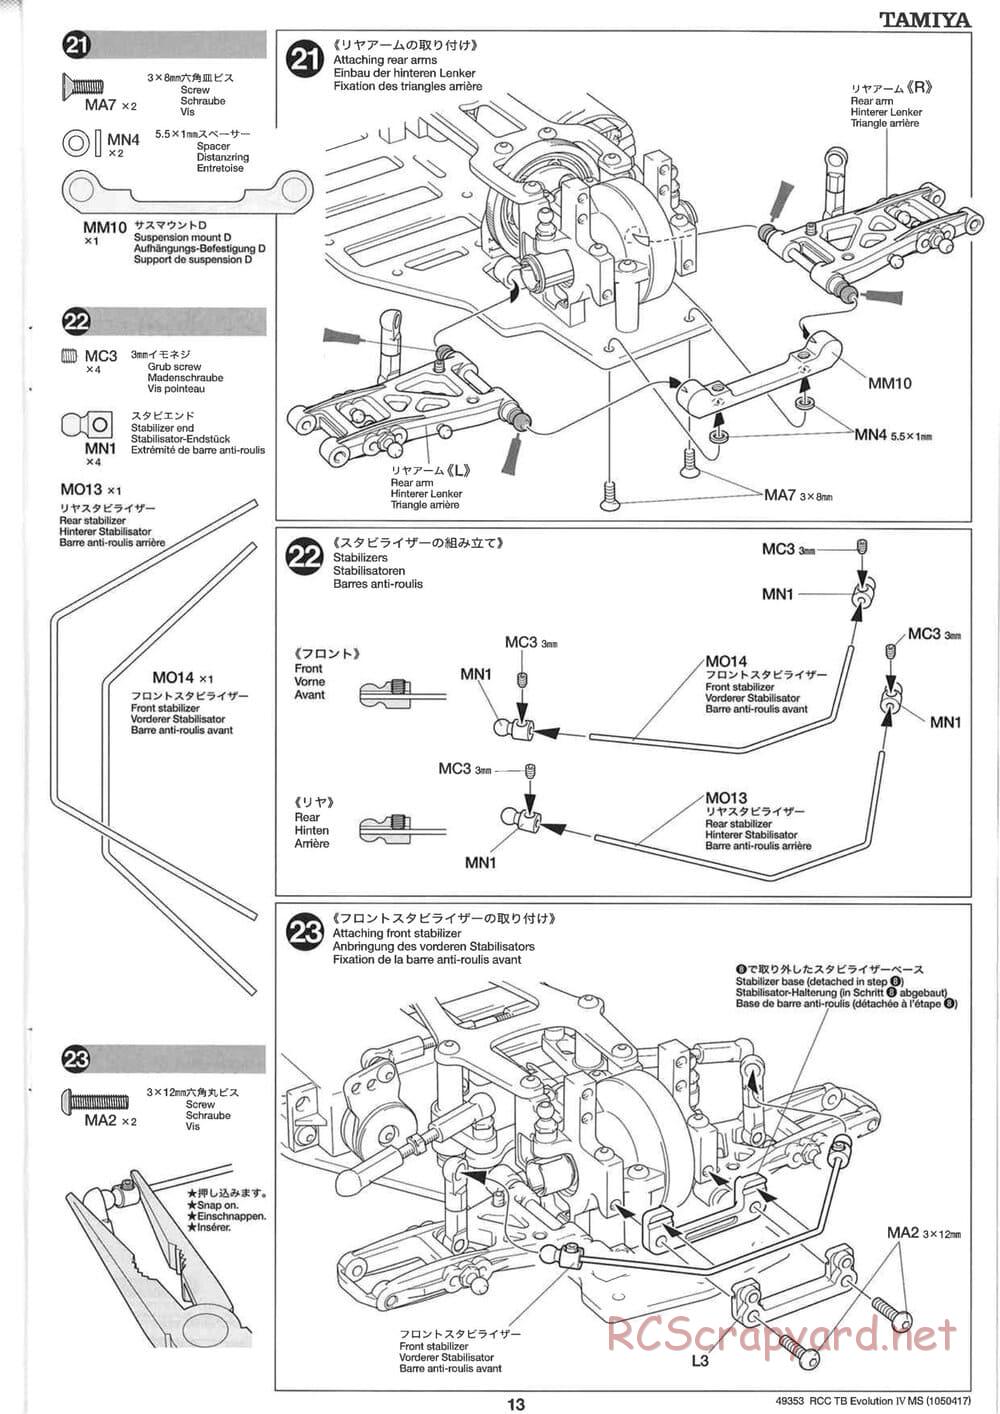 Tamiya - TB Evolution IV MS Chassis - Manual - Page 13